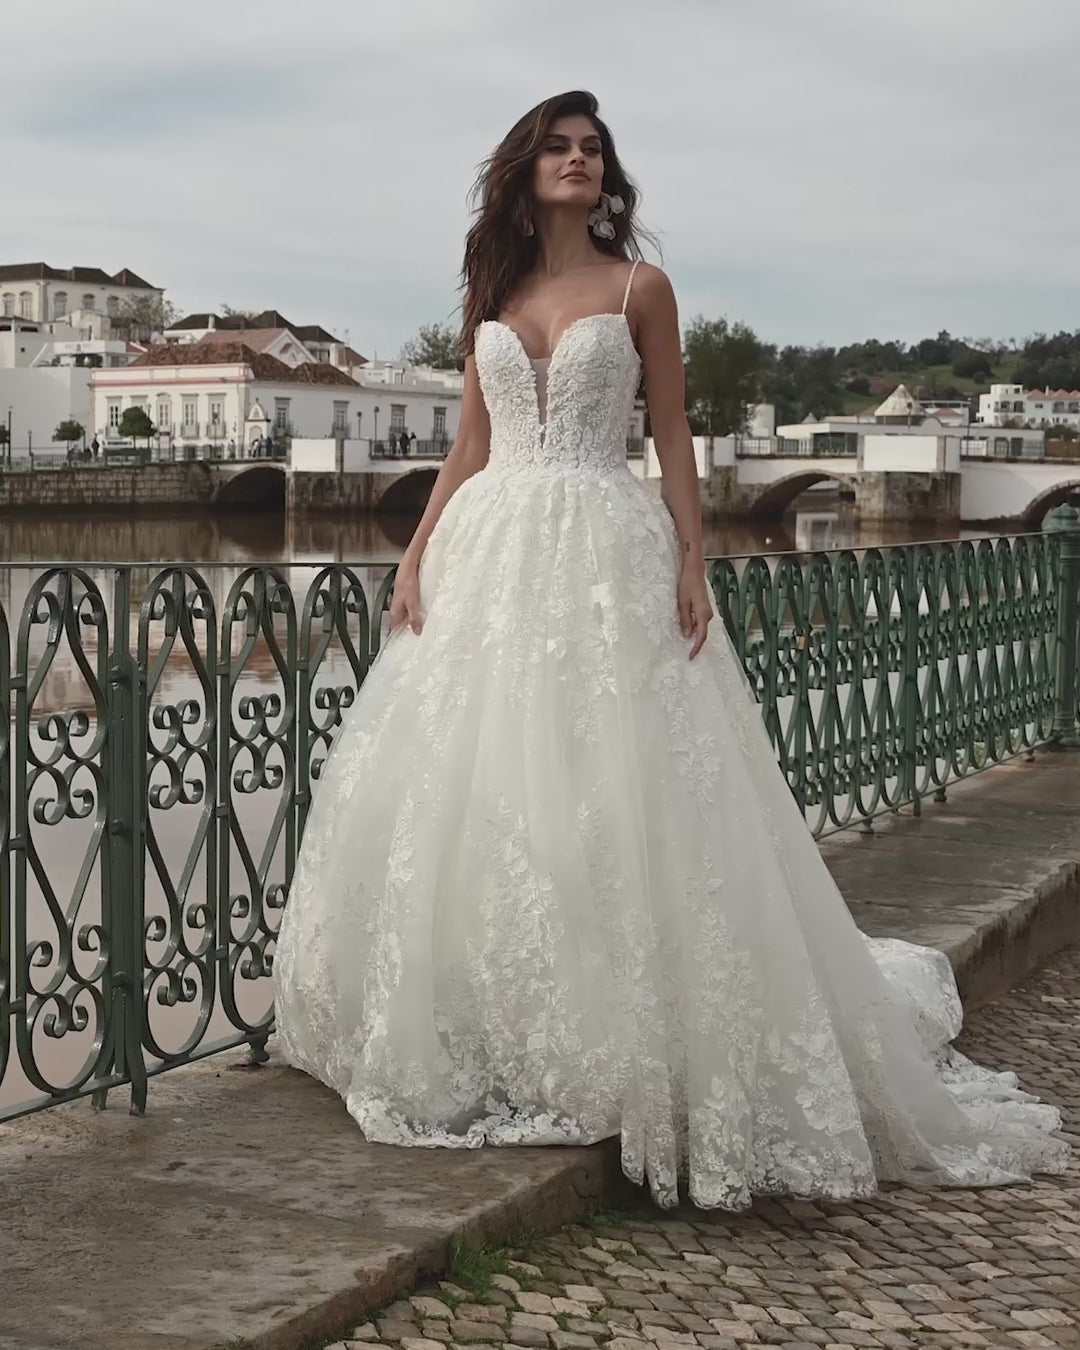 Blush spaghetti straps Wedding Dress – Wedding dresses by Alena Plokhova